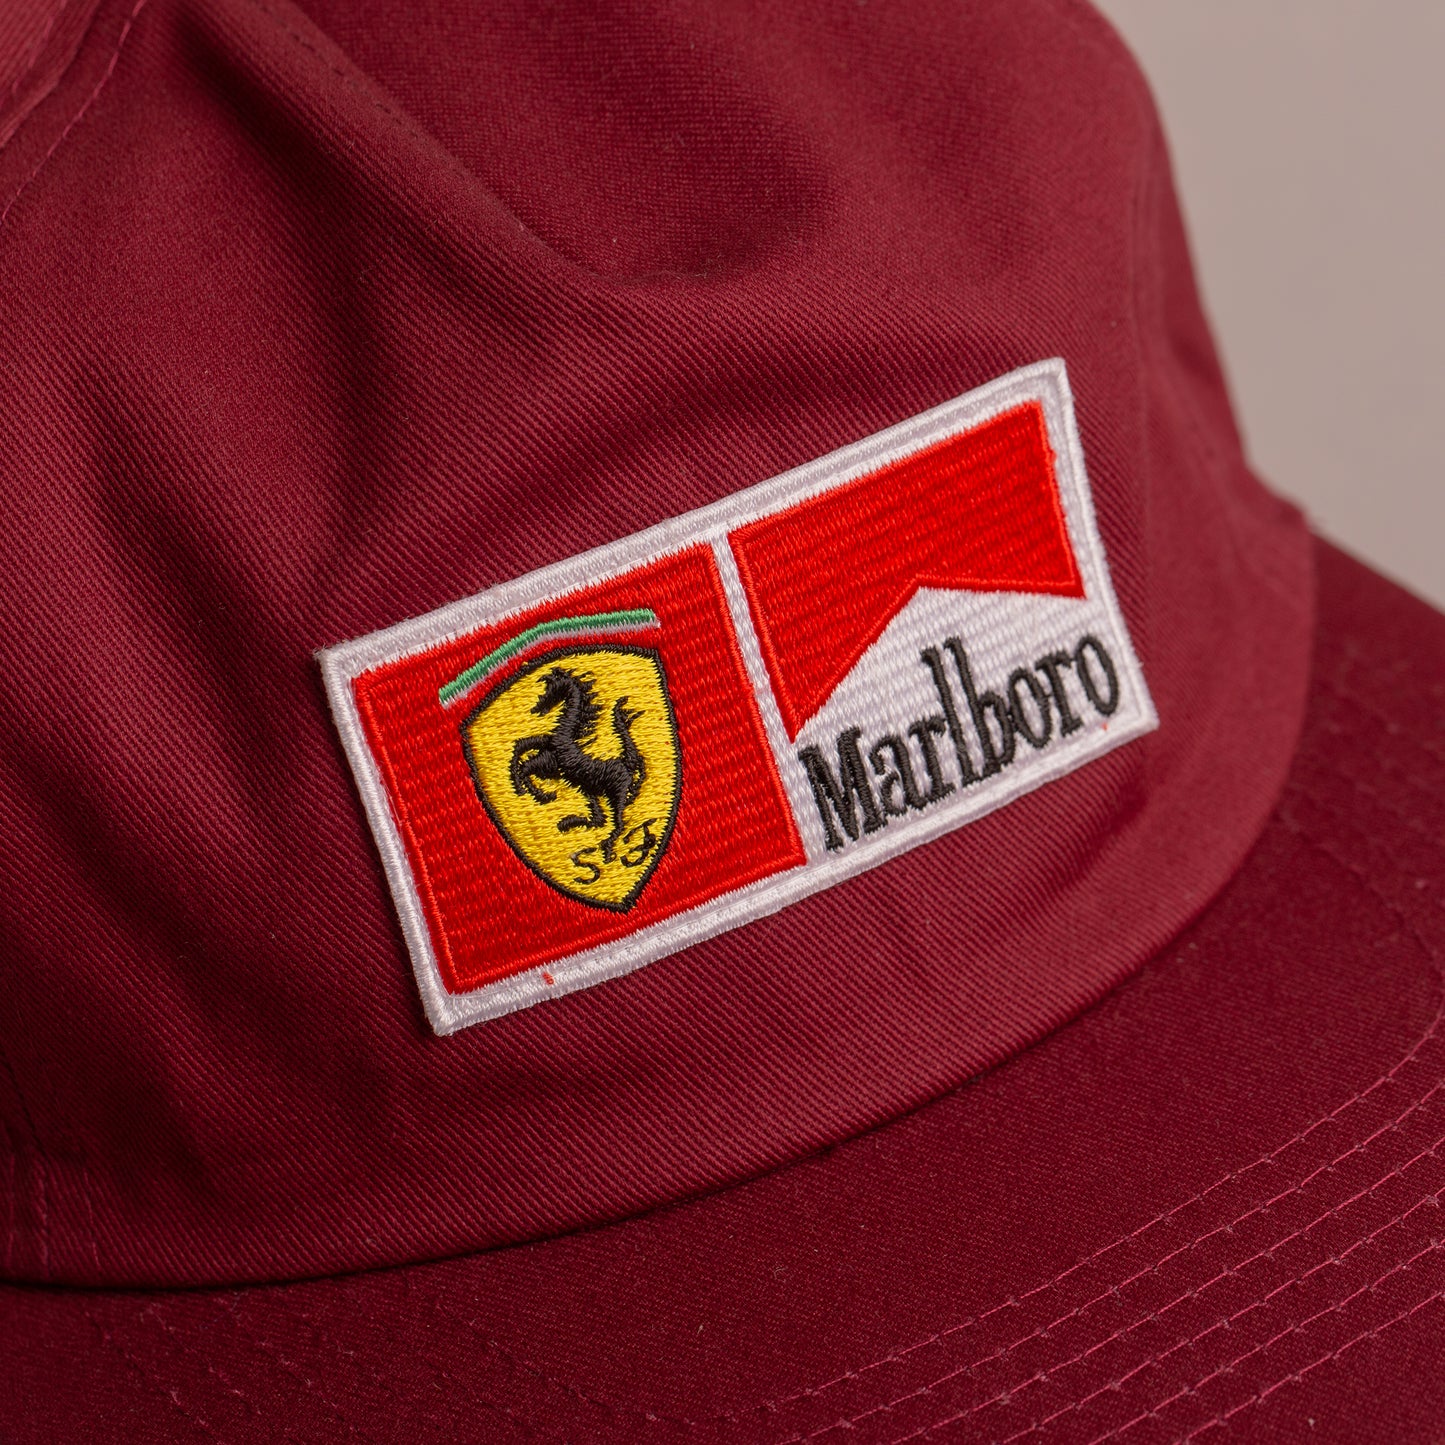 Marlboro Ferrari